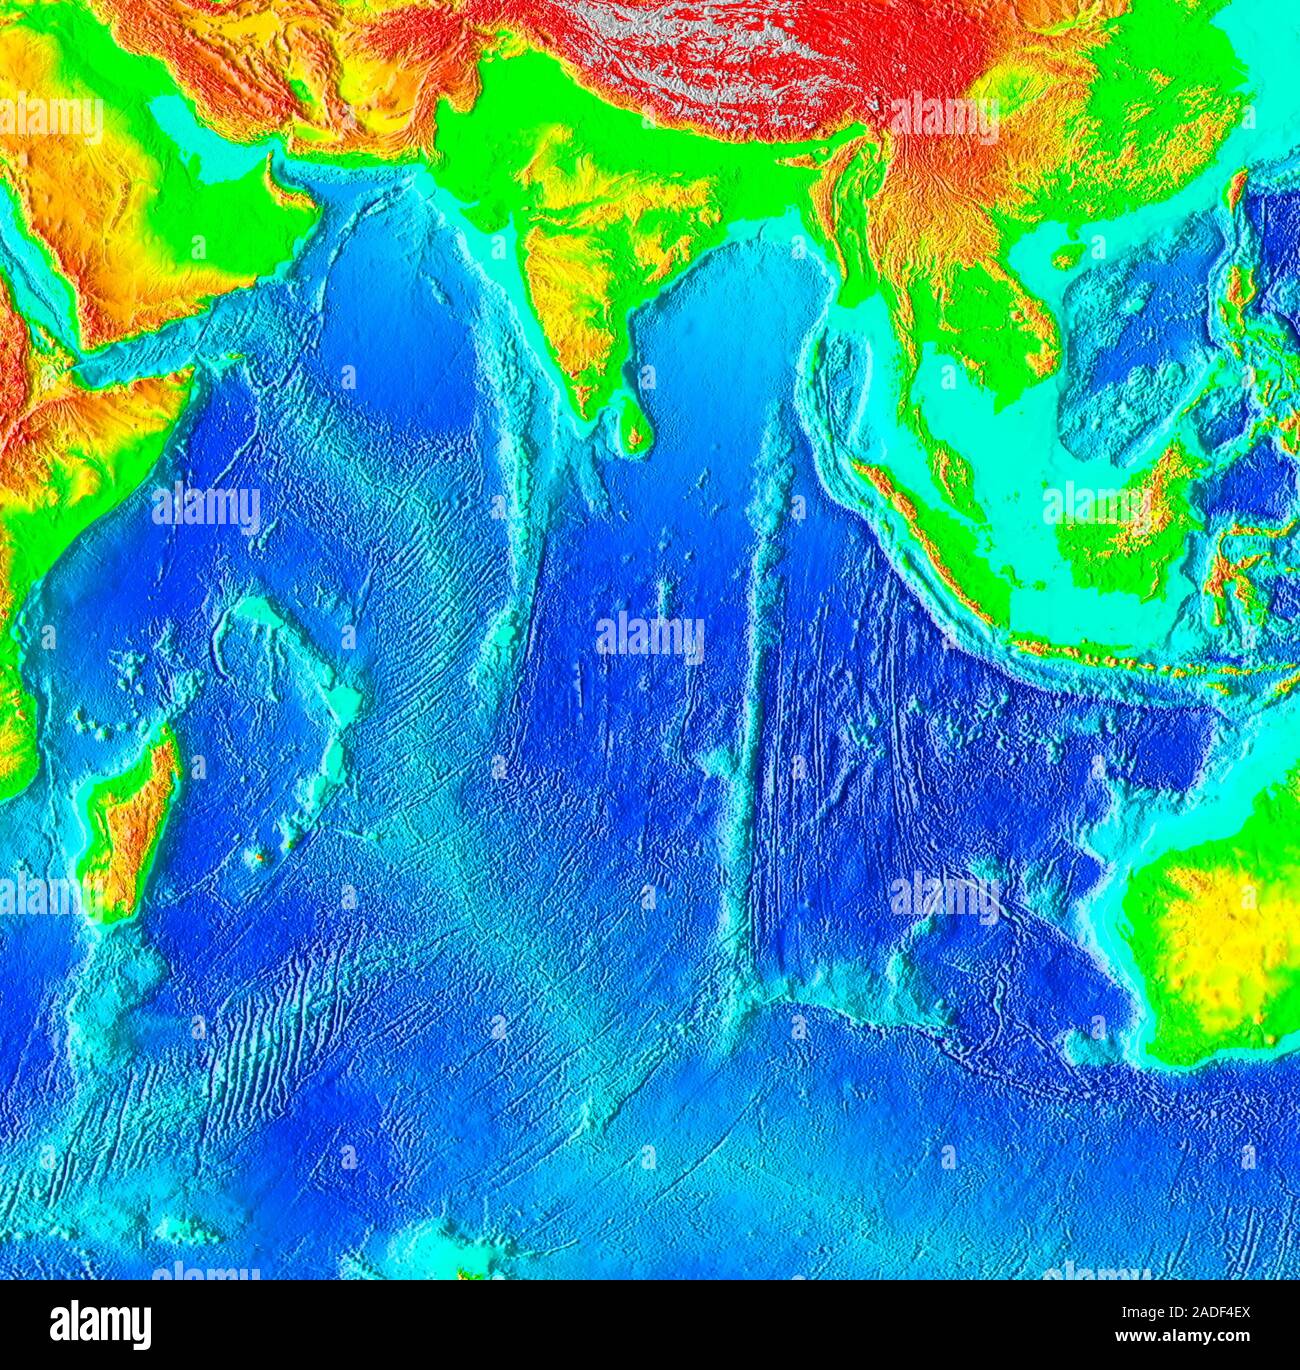 Пояс индийского океана. Индийский океан рисунок. Макет индийского океана. Безопасности в индийском океане. Британская территория в индийском океане.